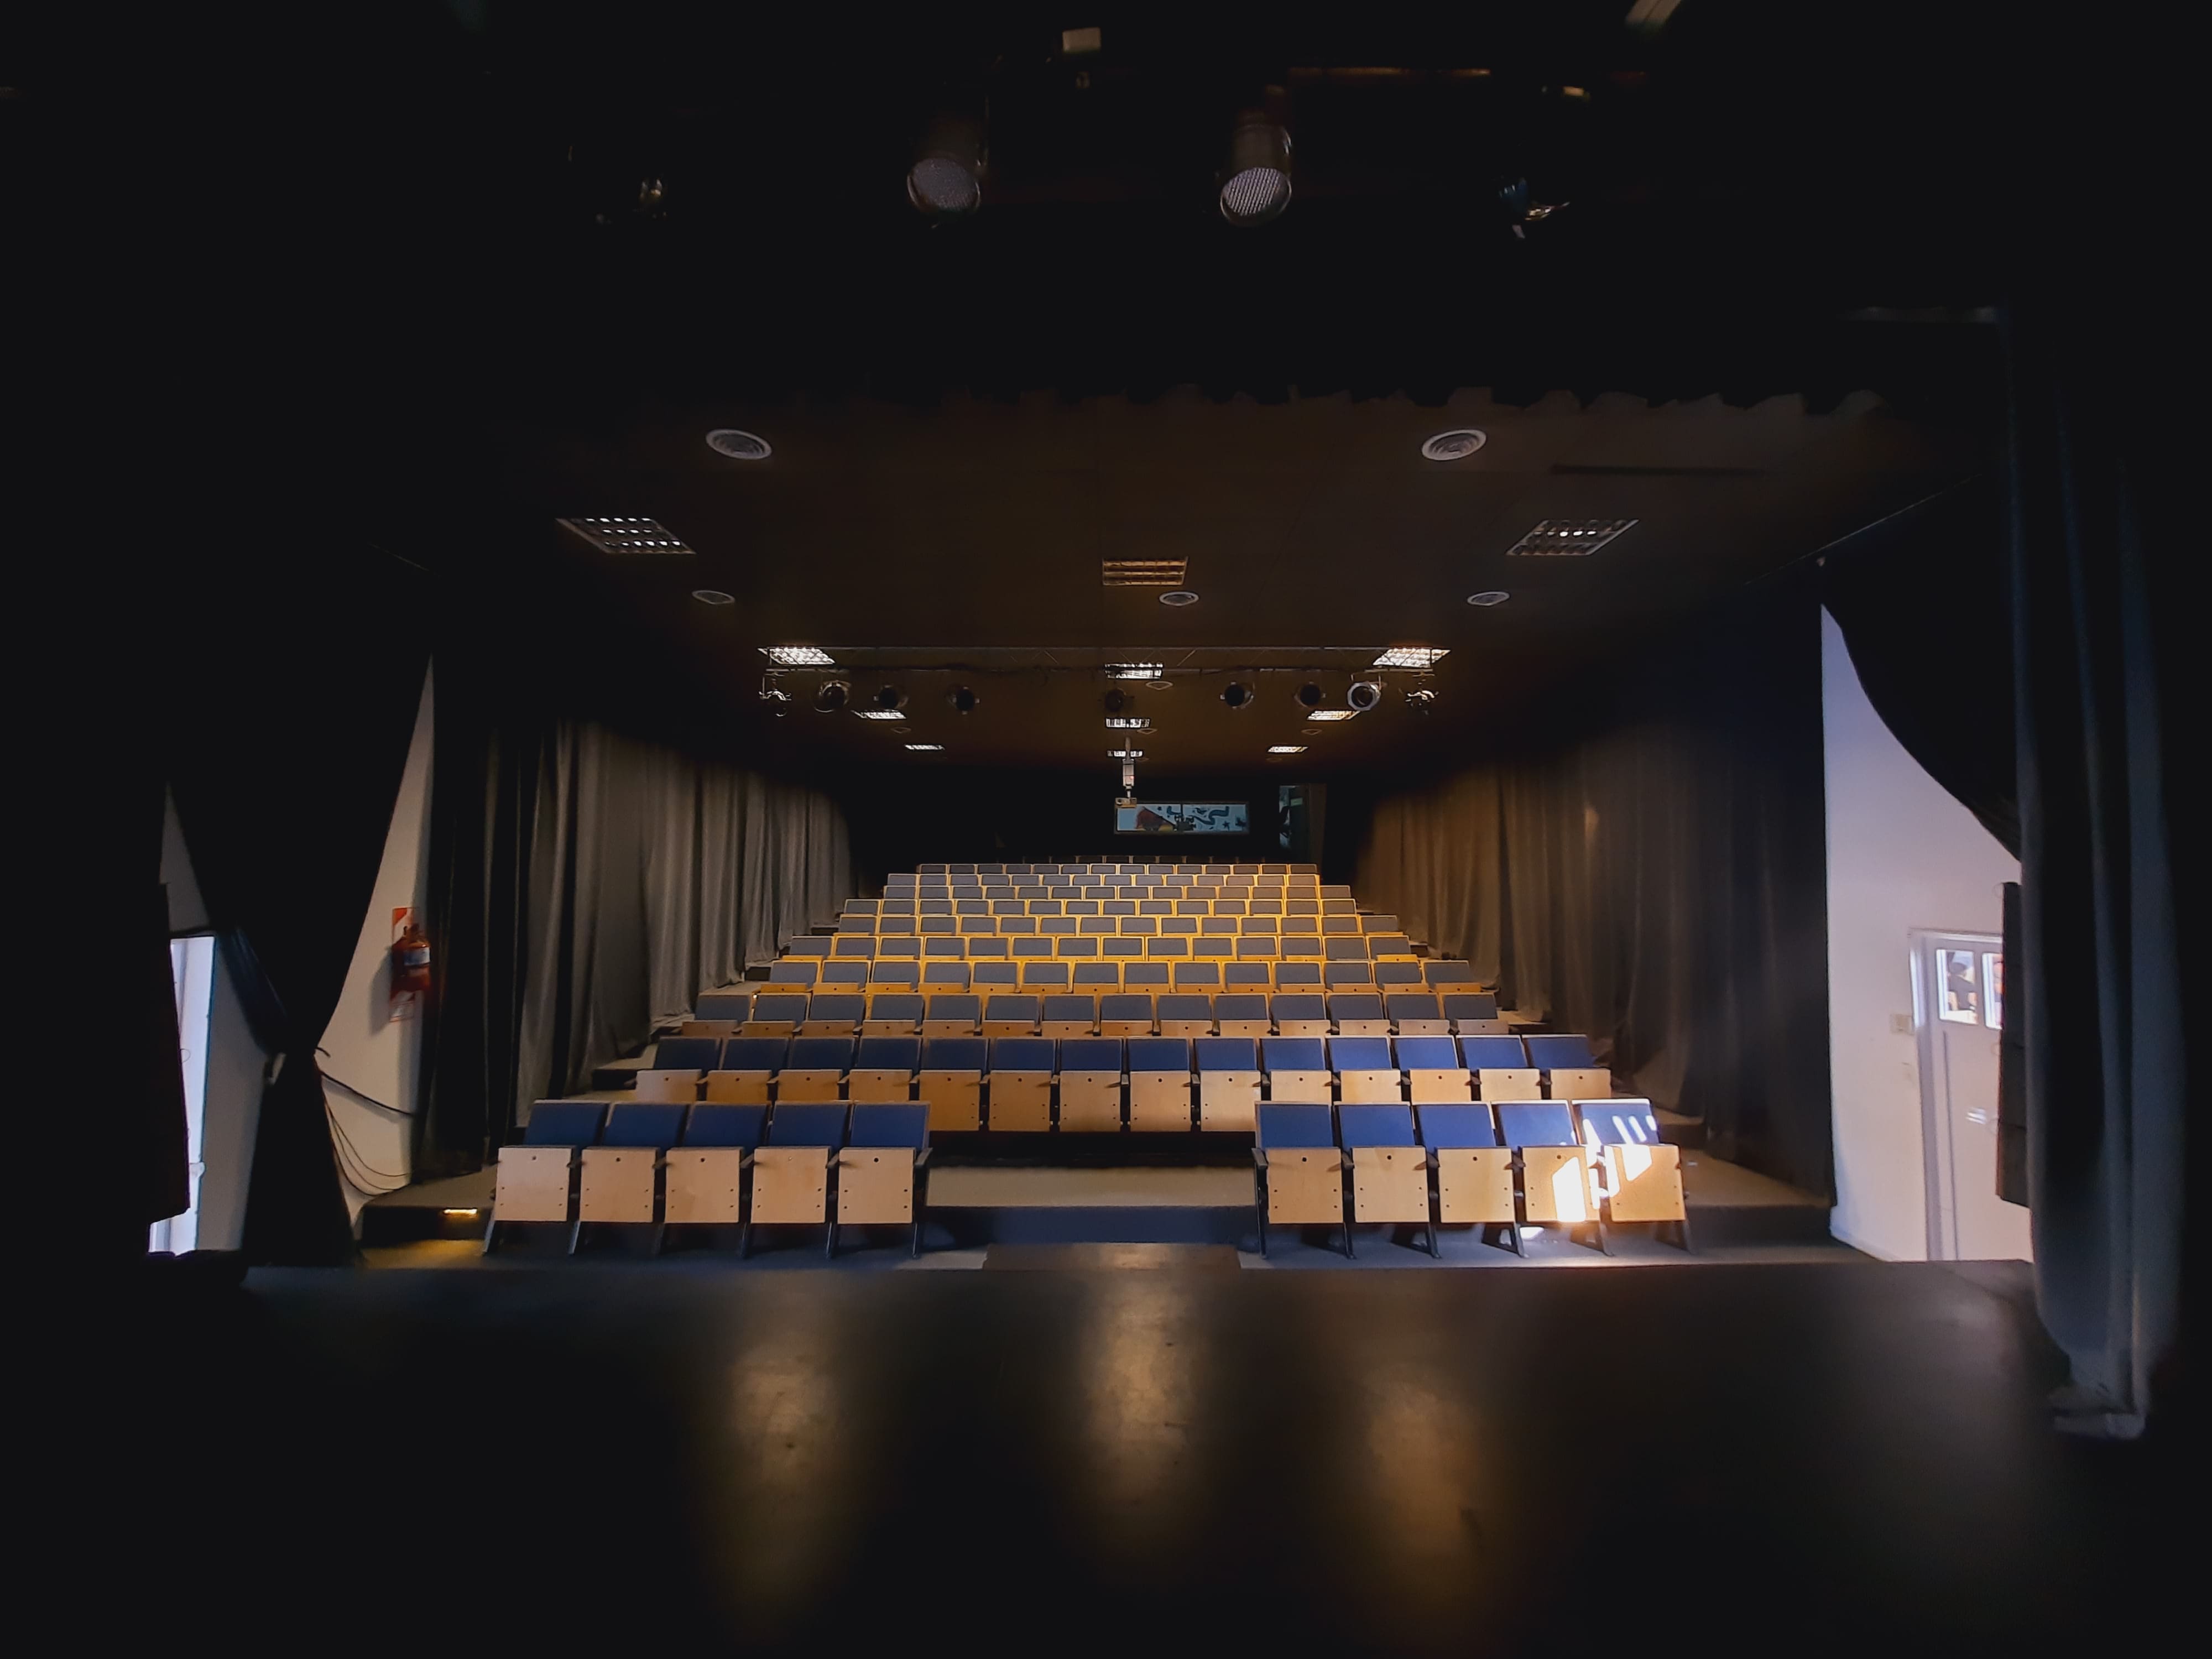 Cine Teatro Leonardo Favio Santa Clara del Mar